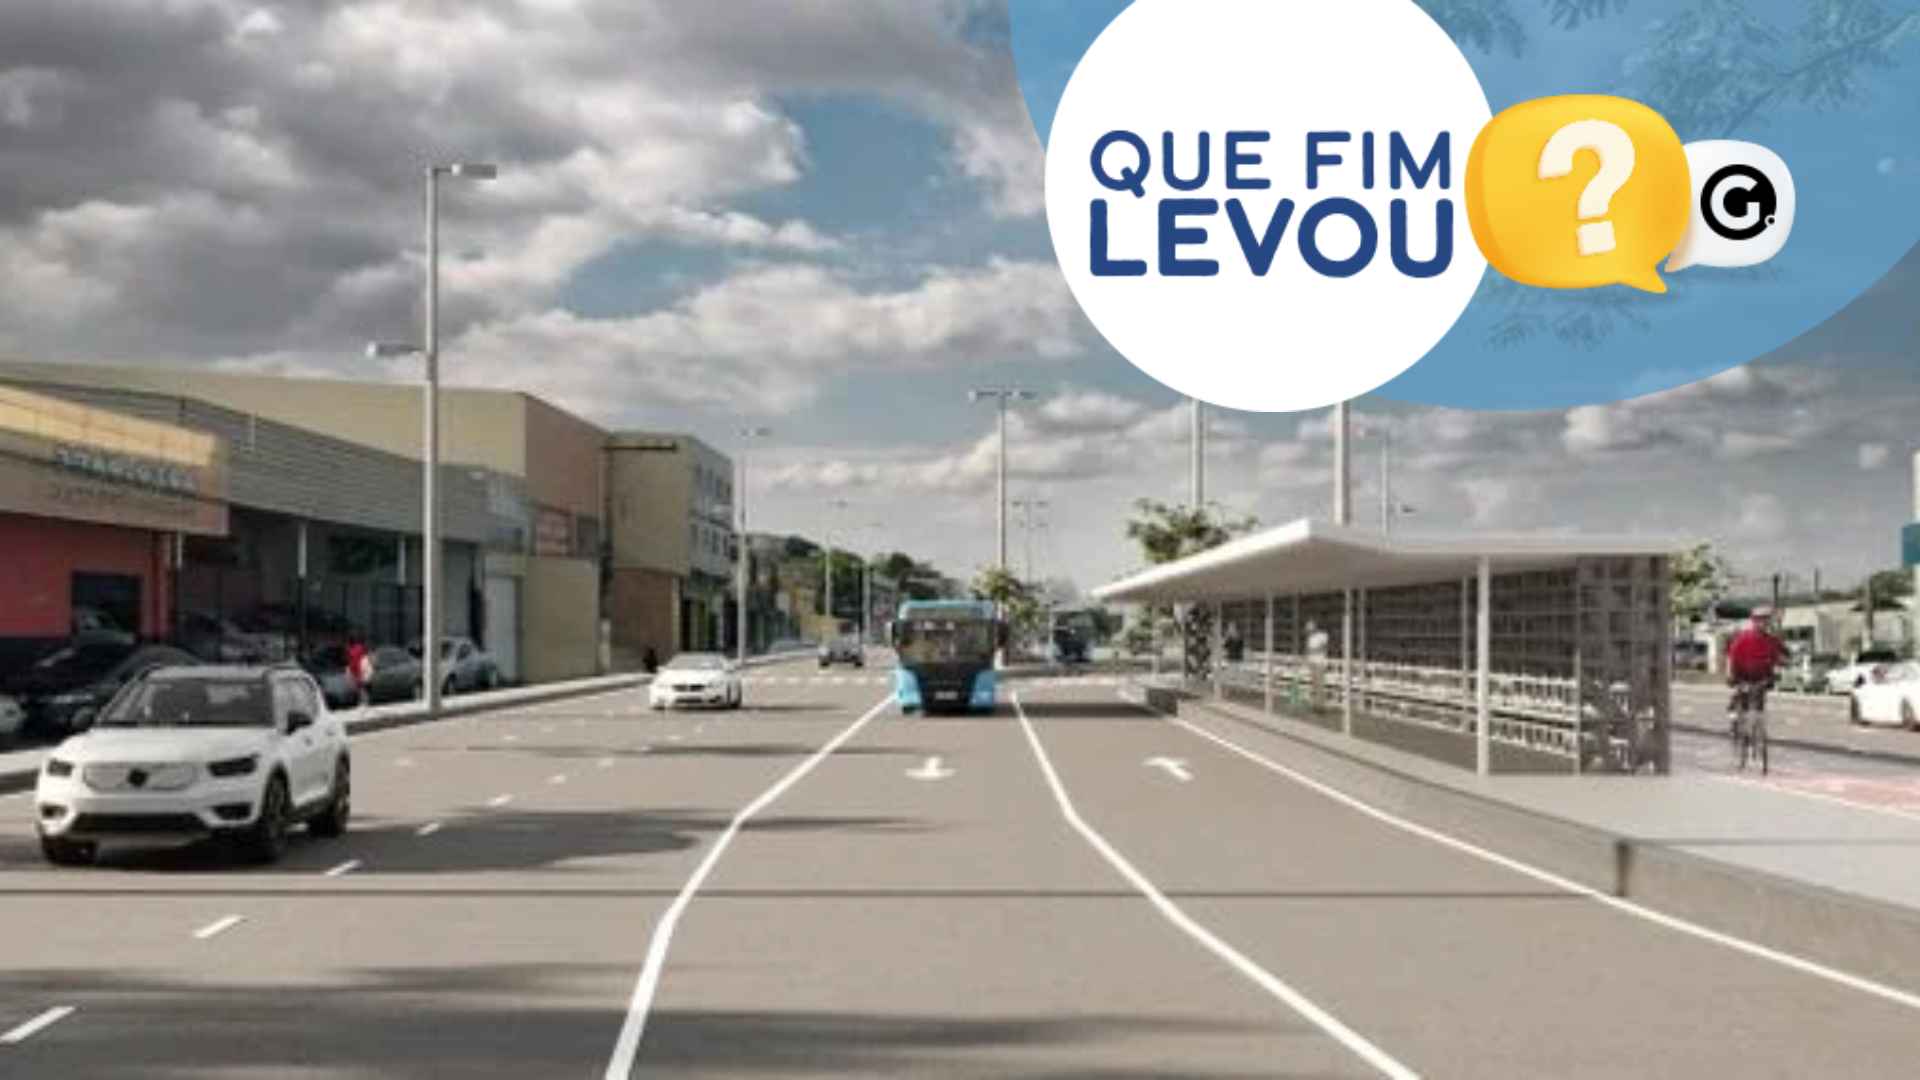 Reinaugurada no domingo (5), avenida ainda vai ganhar ciclovia e pista exclusiva para ônibus – como o BRT, do Rio de Janeiro e de Belo Horizonte – conforme projeto do governo do Estado